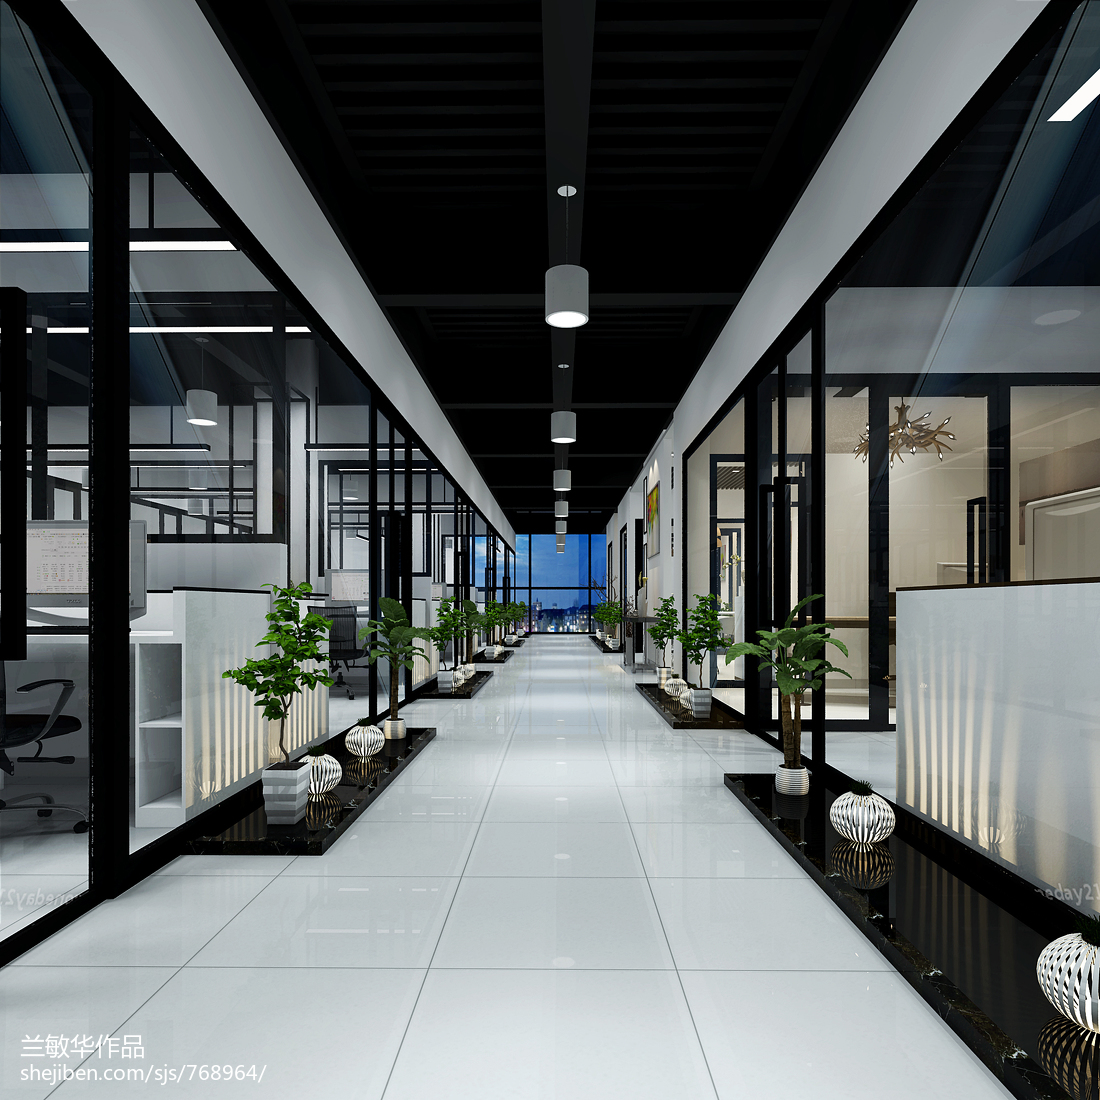 AIX——孵化器办公室室内装饰设计空间设计_1461508